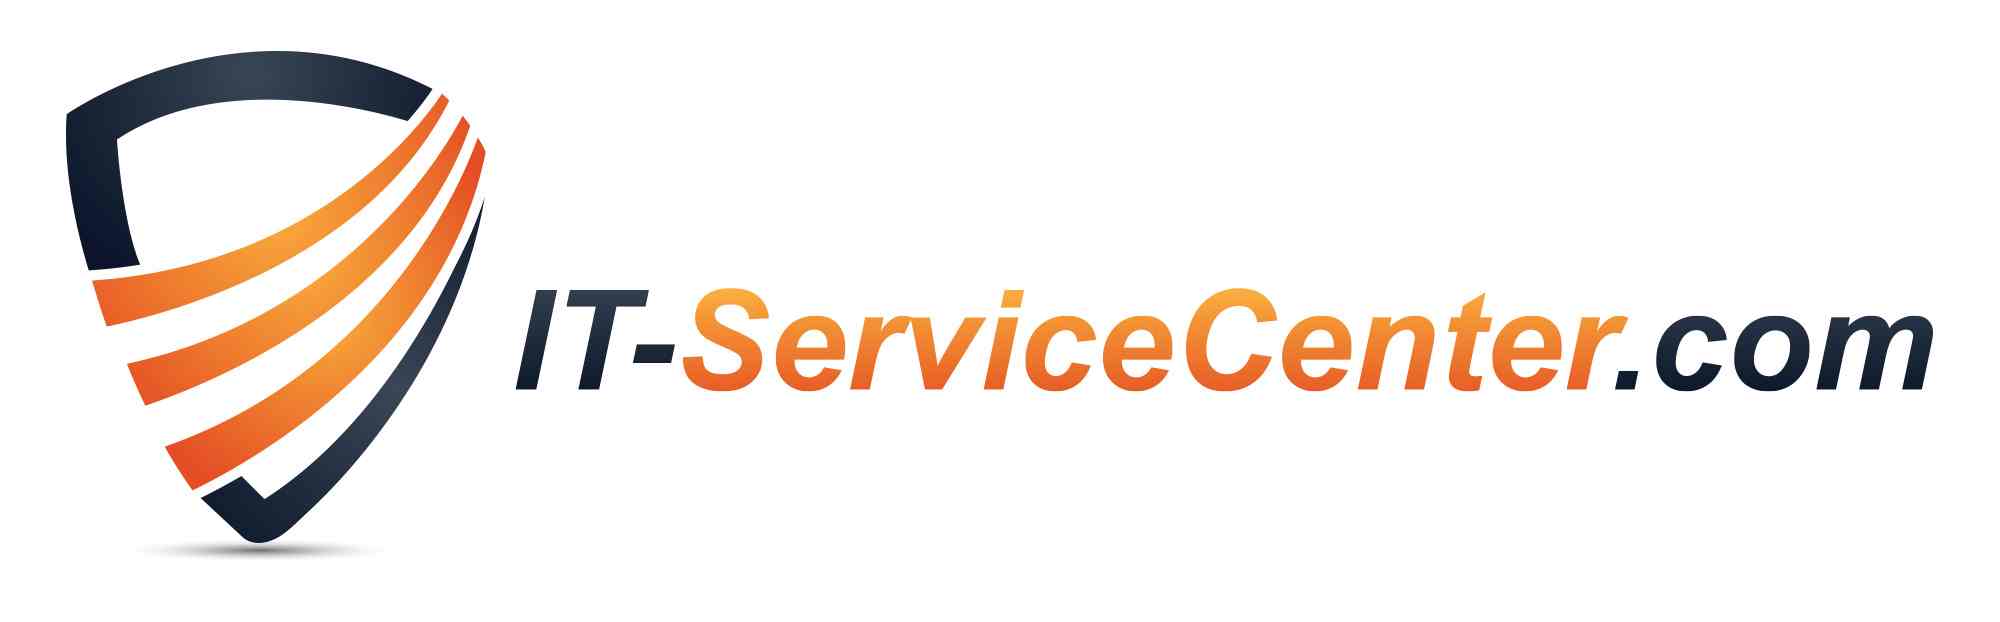 IT ServiceCenter.com .Logo .withClaim